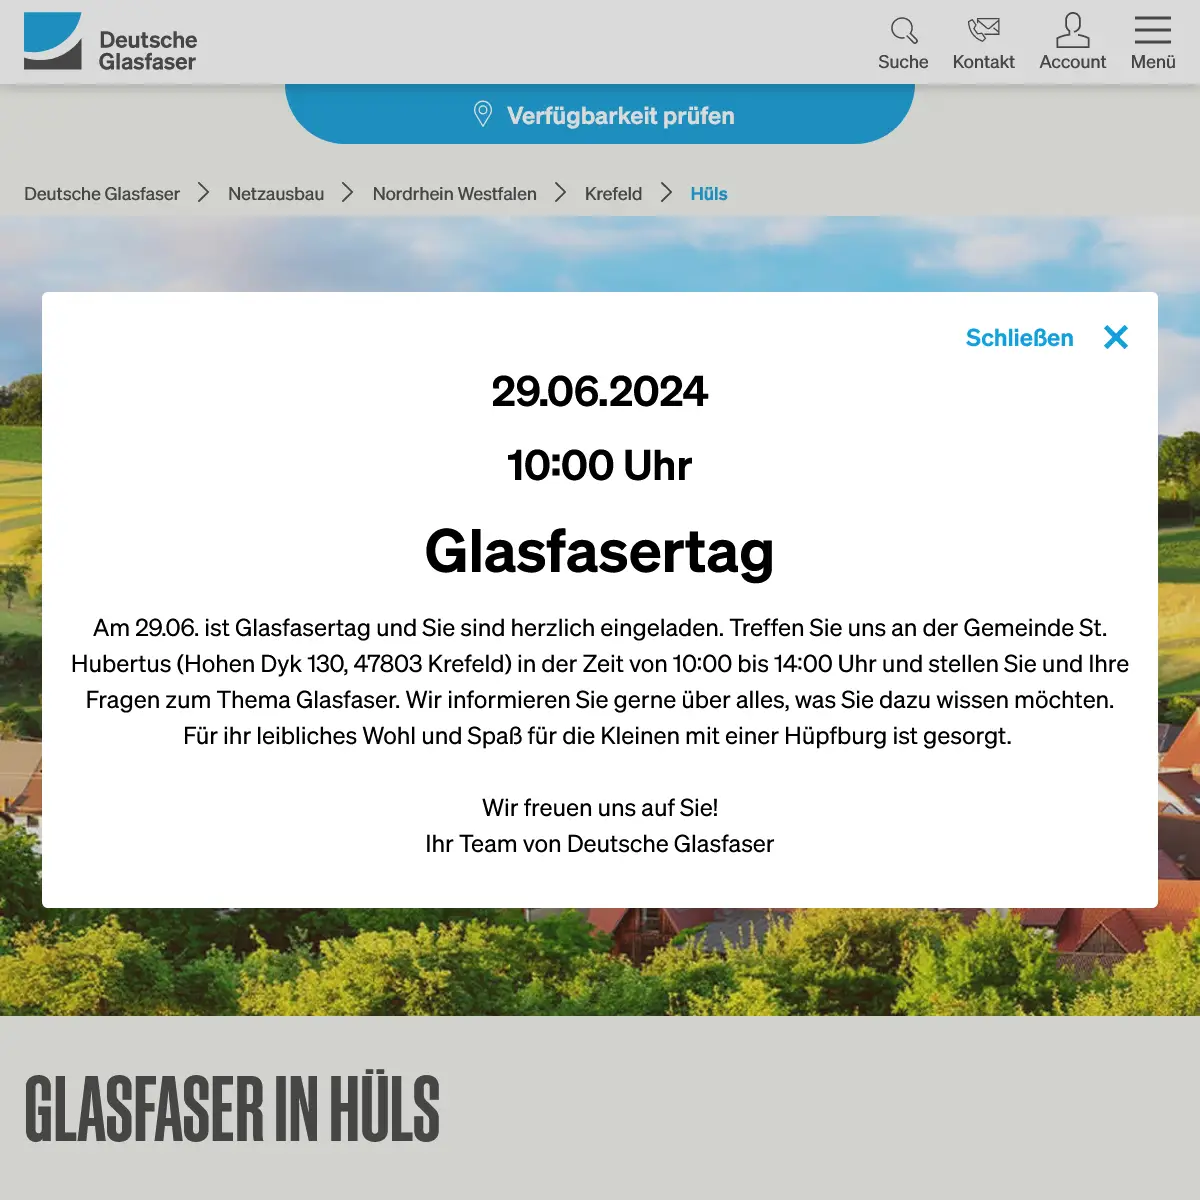 Screenshot der Website Deutsche Glasfaser mit dem PopUp inkl. Infos zum Glasfasertag am 29.6. von 10-14 Uhr